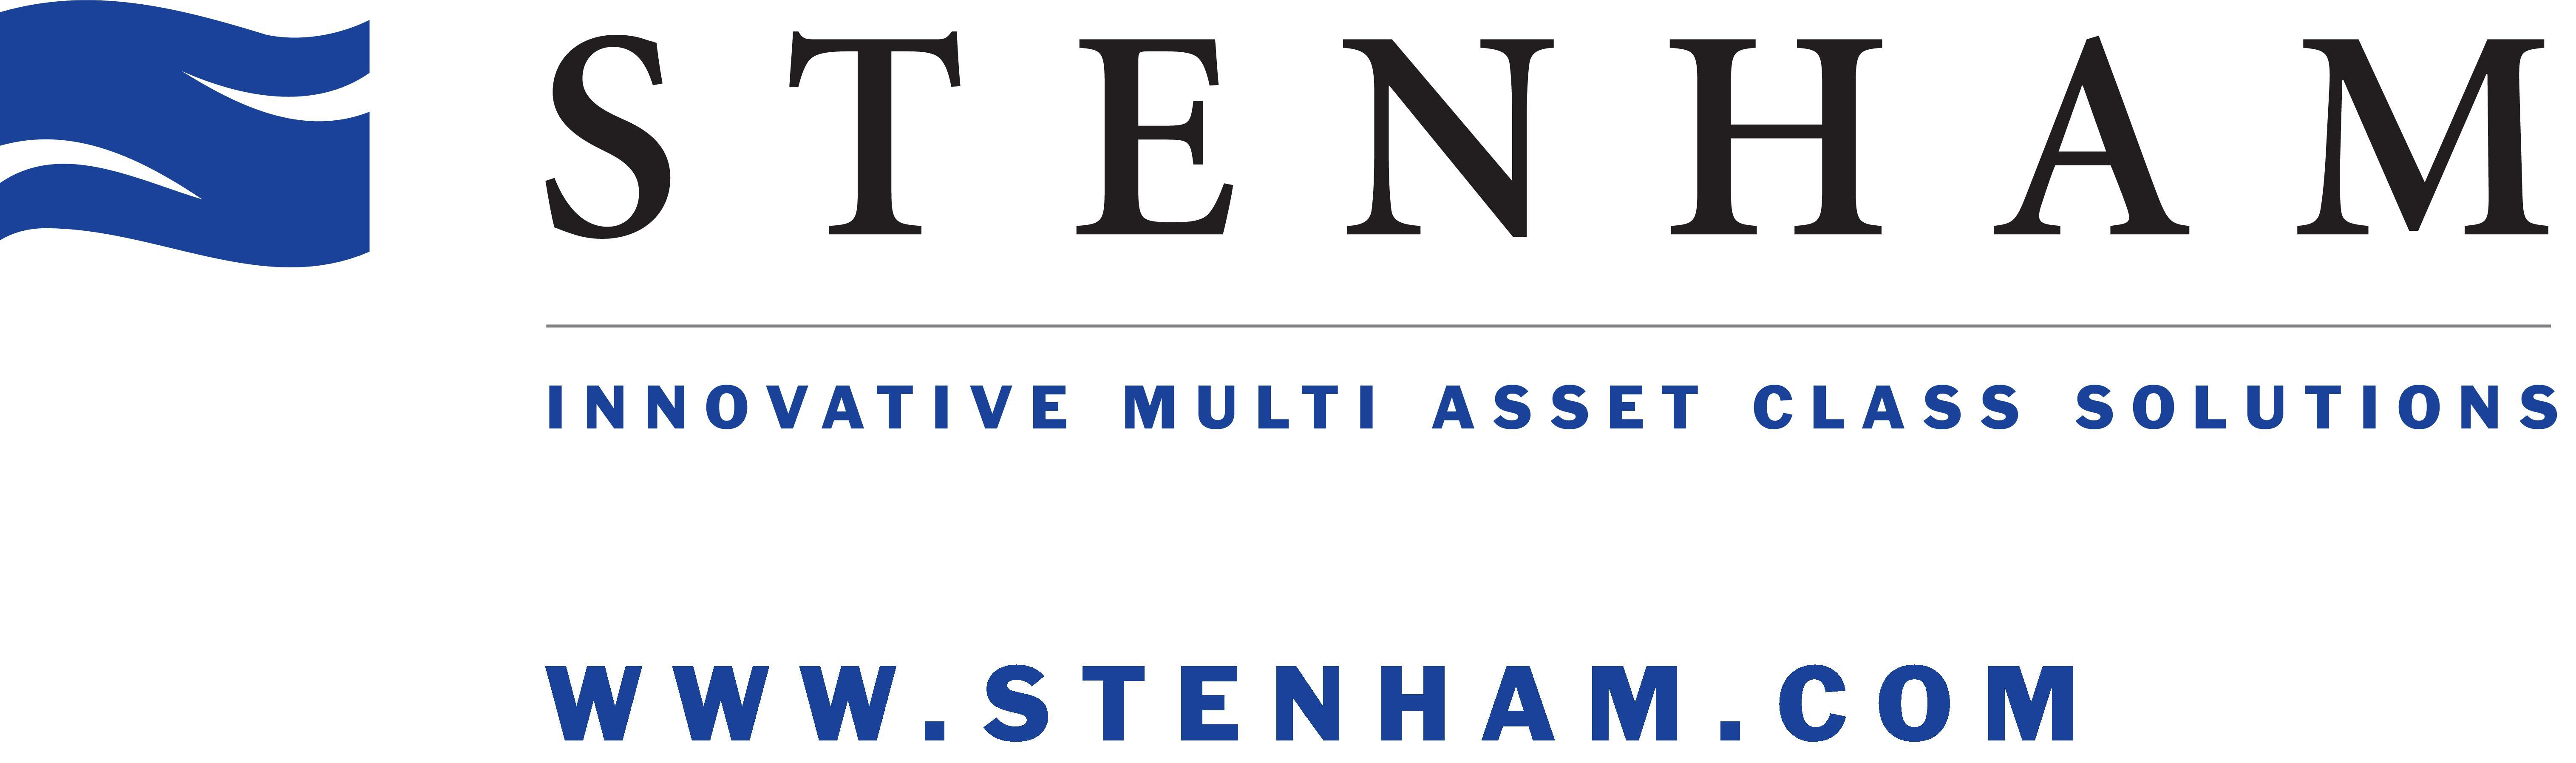 Stenham Asset Management